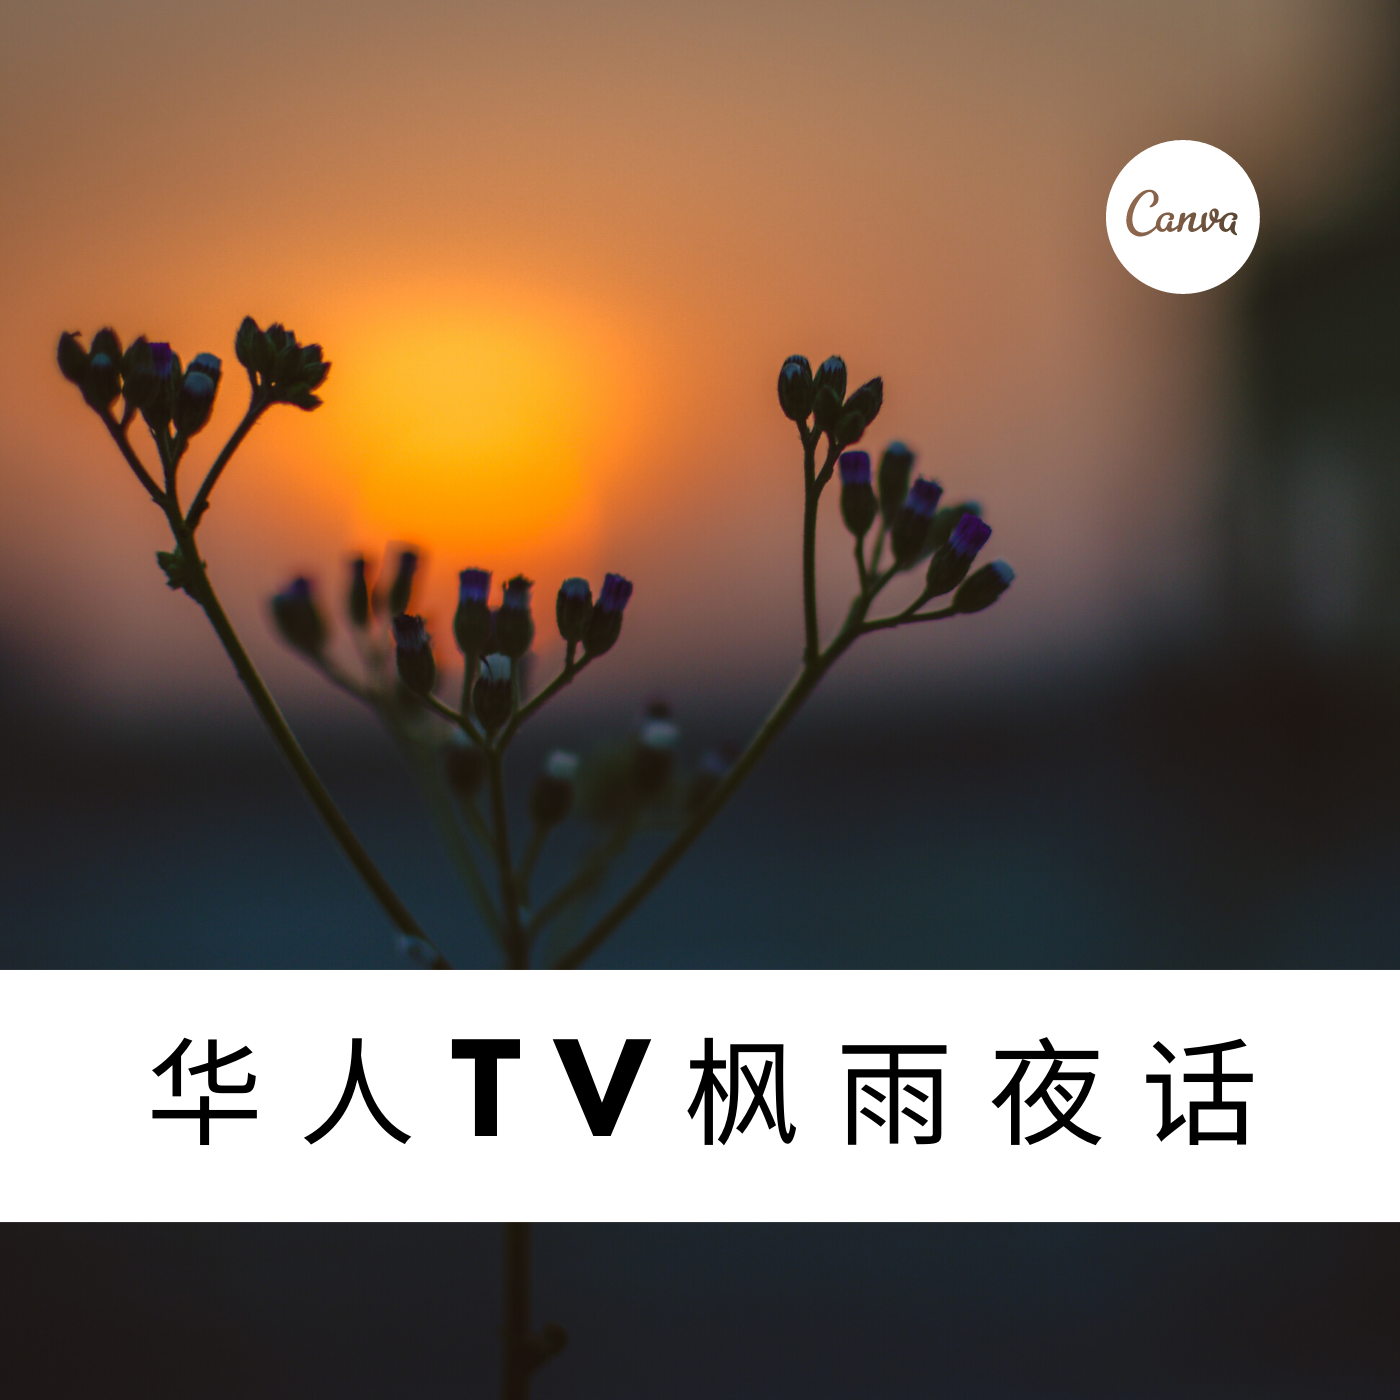 华人TV枫雨夜话